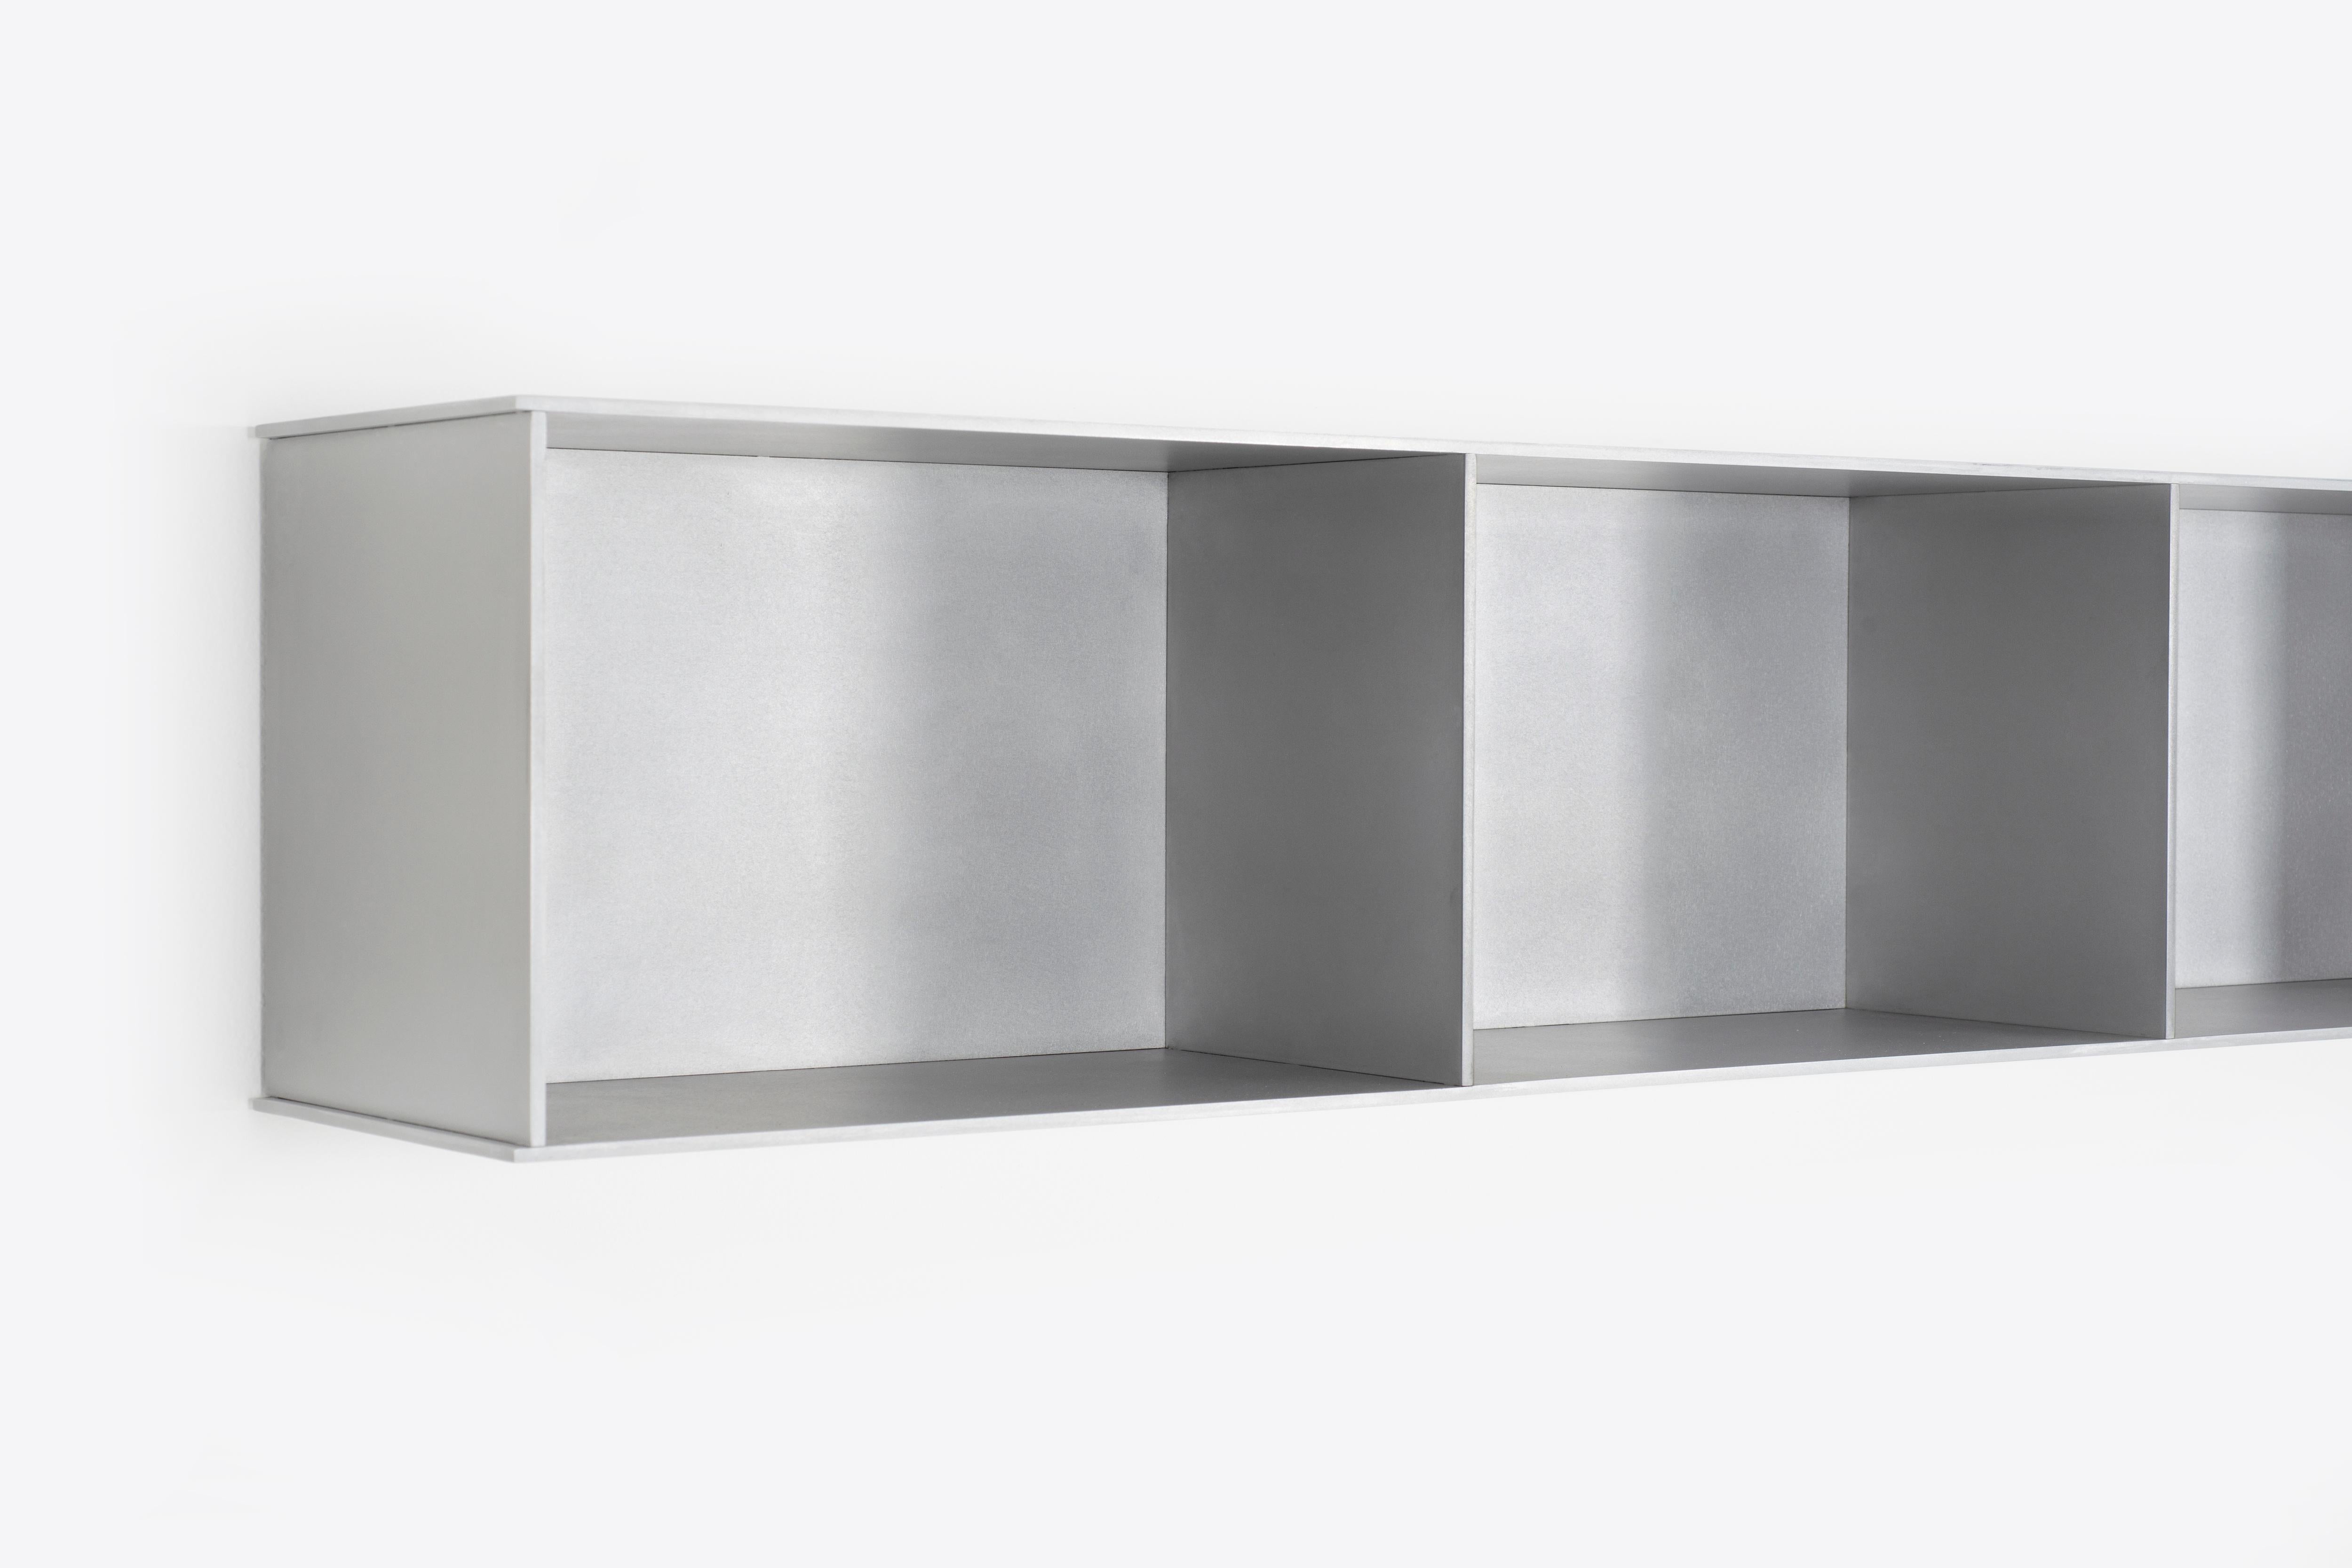 L'étagère murale Minimalist 3G, d'une largeur de 54 pouces, est sculptée dans de l'aluminium poli à la cire d'une épaisseur de 1/4 de pouce. Chaque étagère est dotée d'un profilé en U soudé qui s'étend sur toute la longueur de l'étagère et se monte